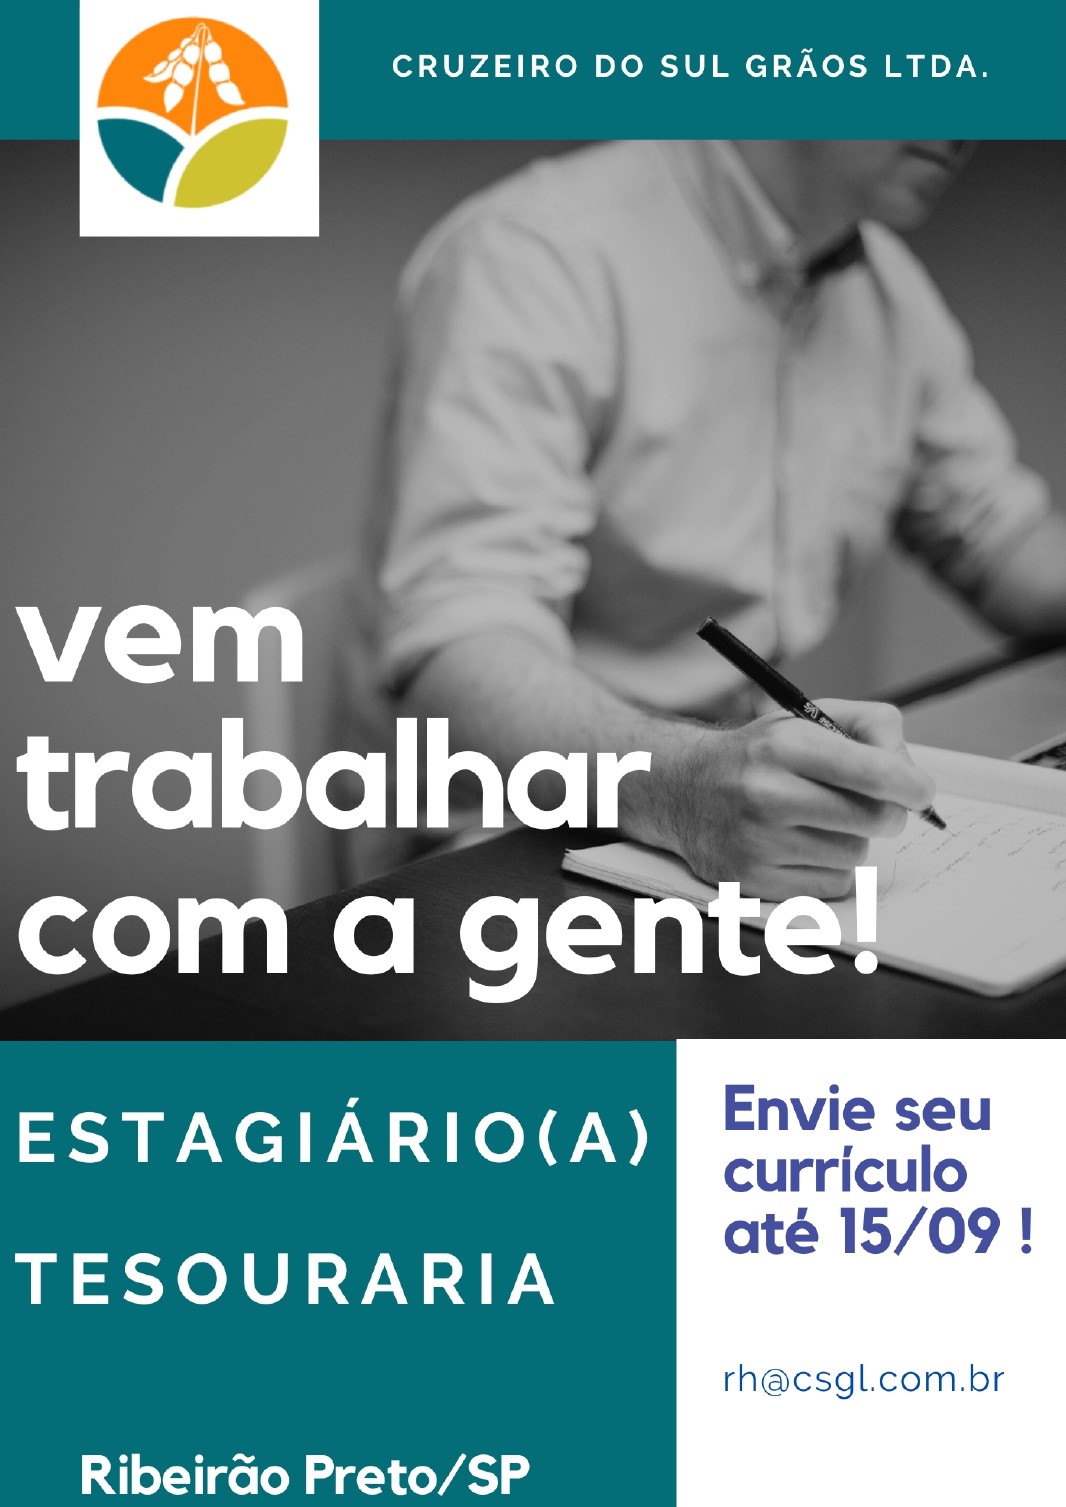 Cruzeiro_do_Sul_Grãos_page-0001.jpg